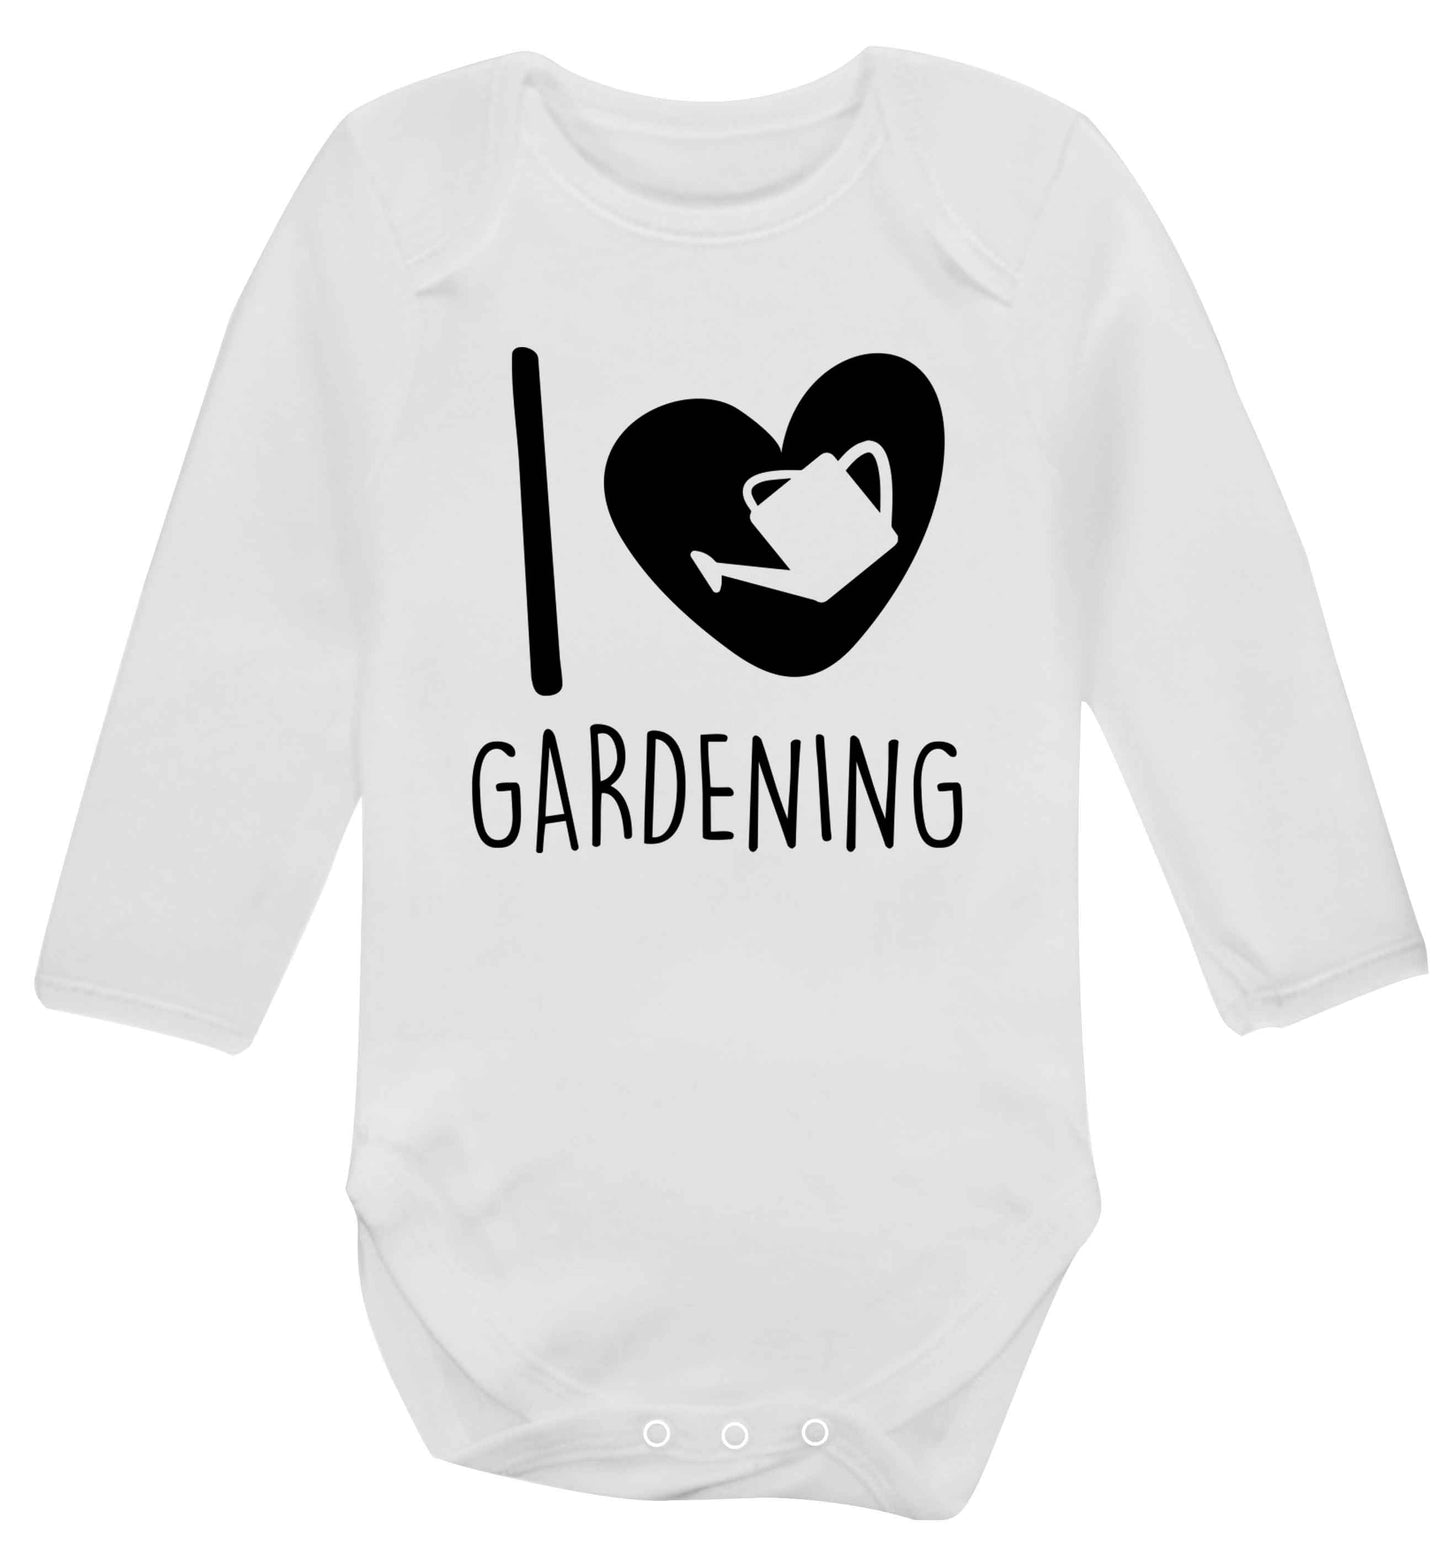 I love gardening Baby Vest long sleeved white 6-12 months